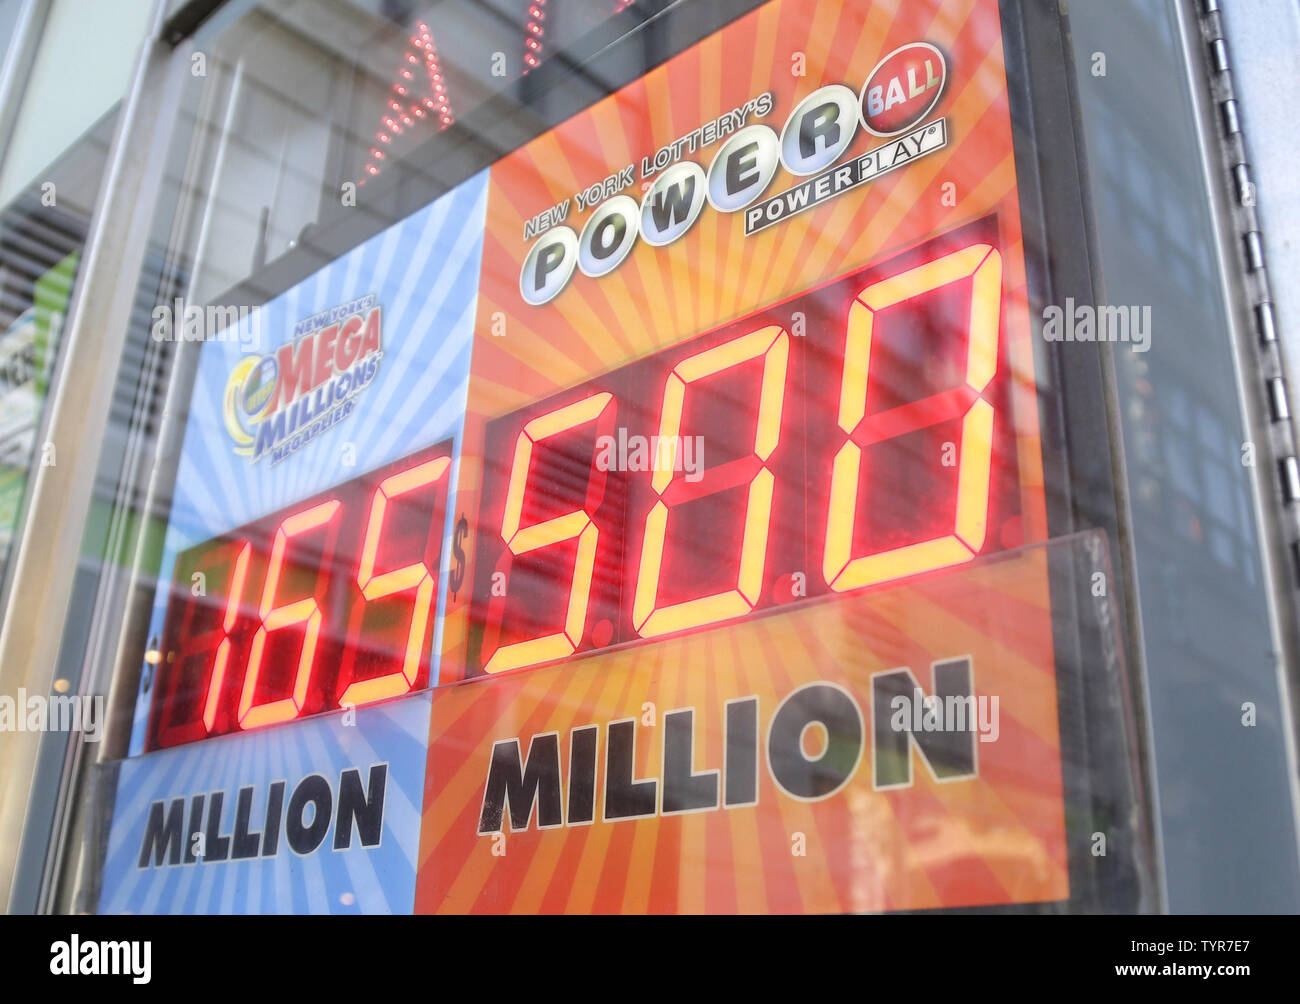 Powerball Jackpot at $500 million